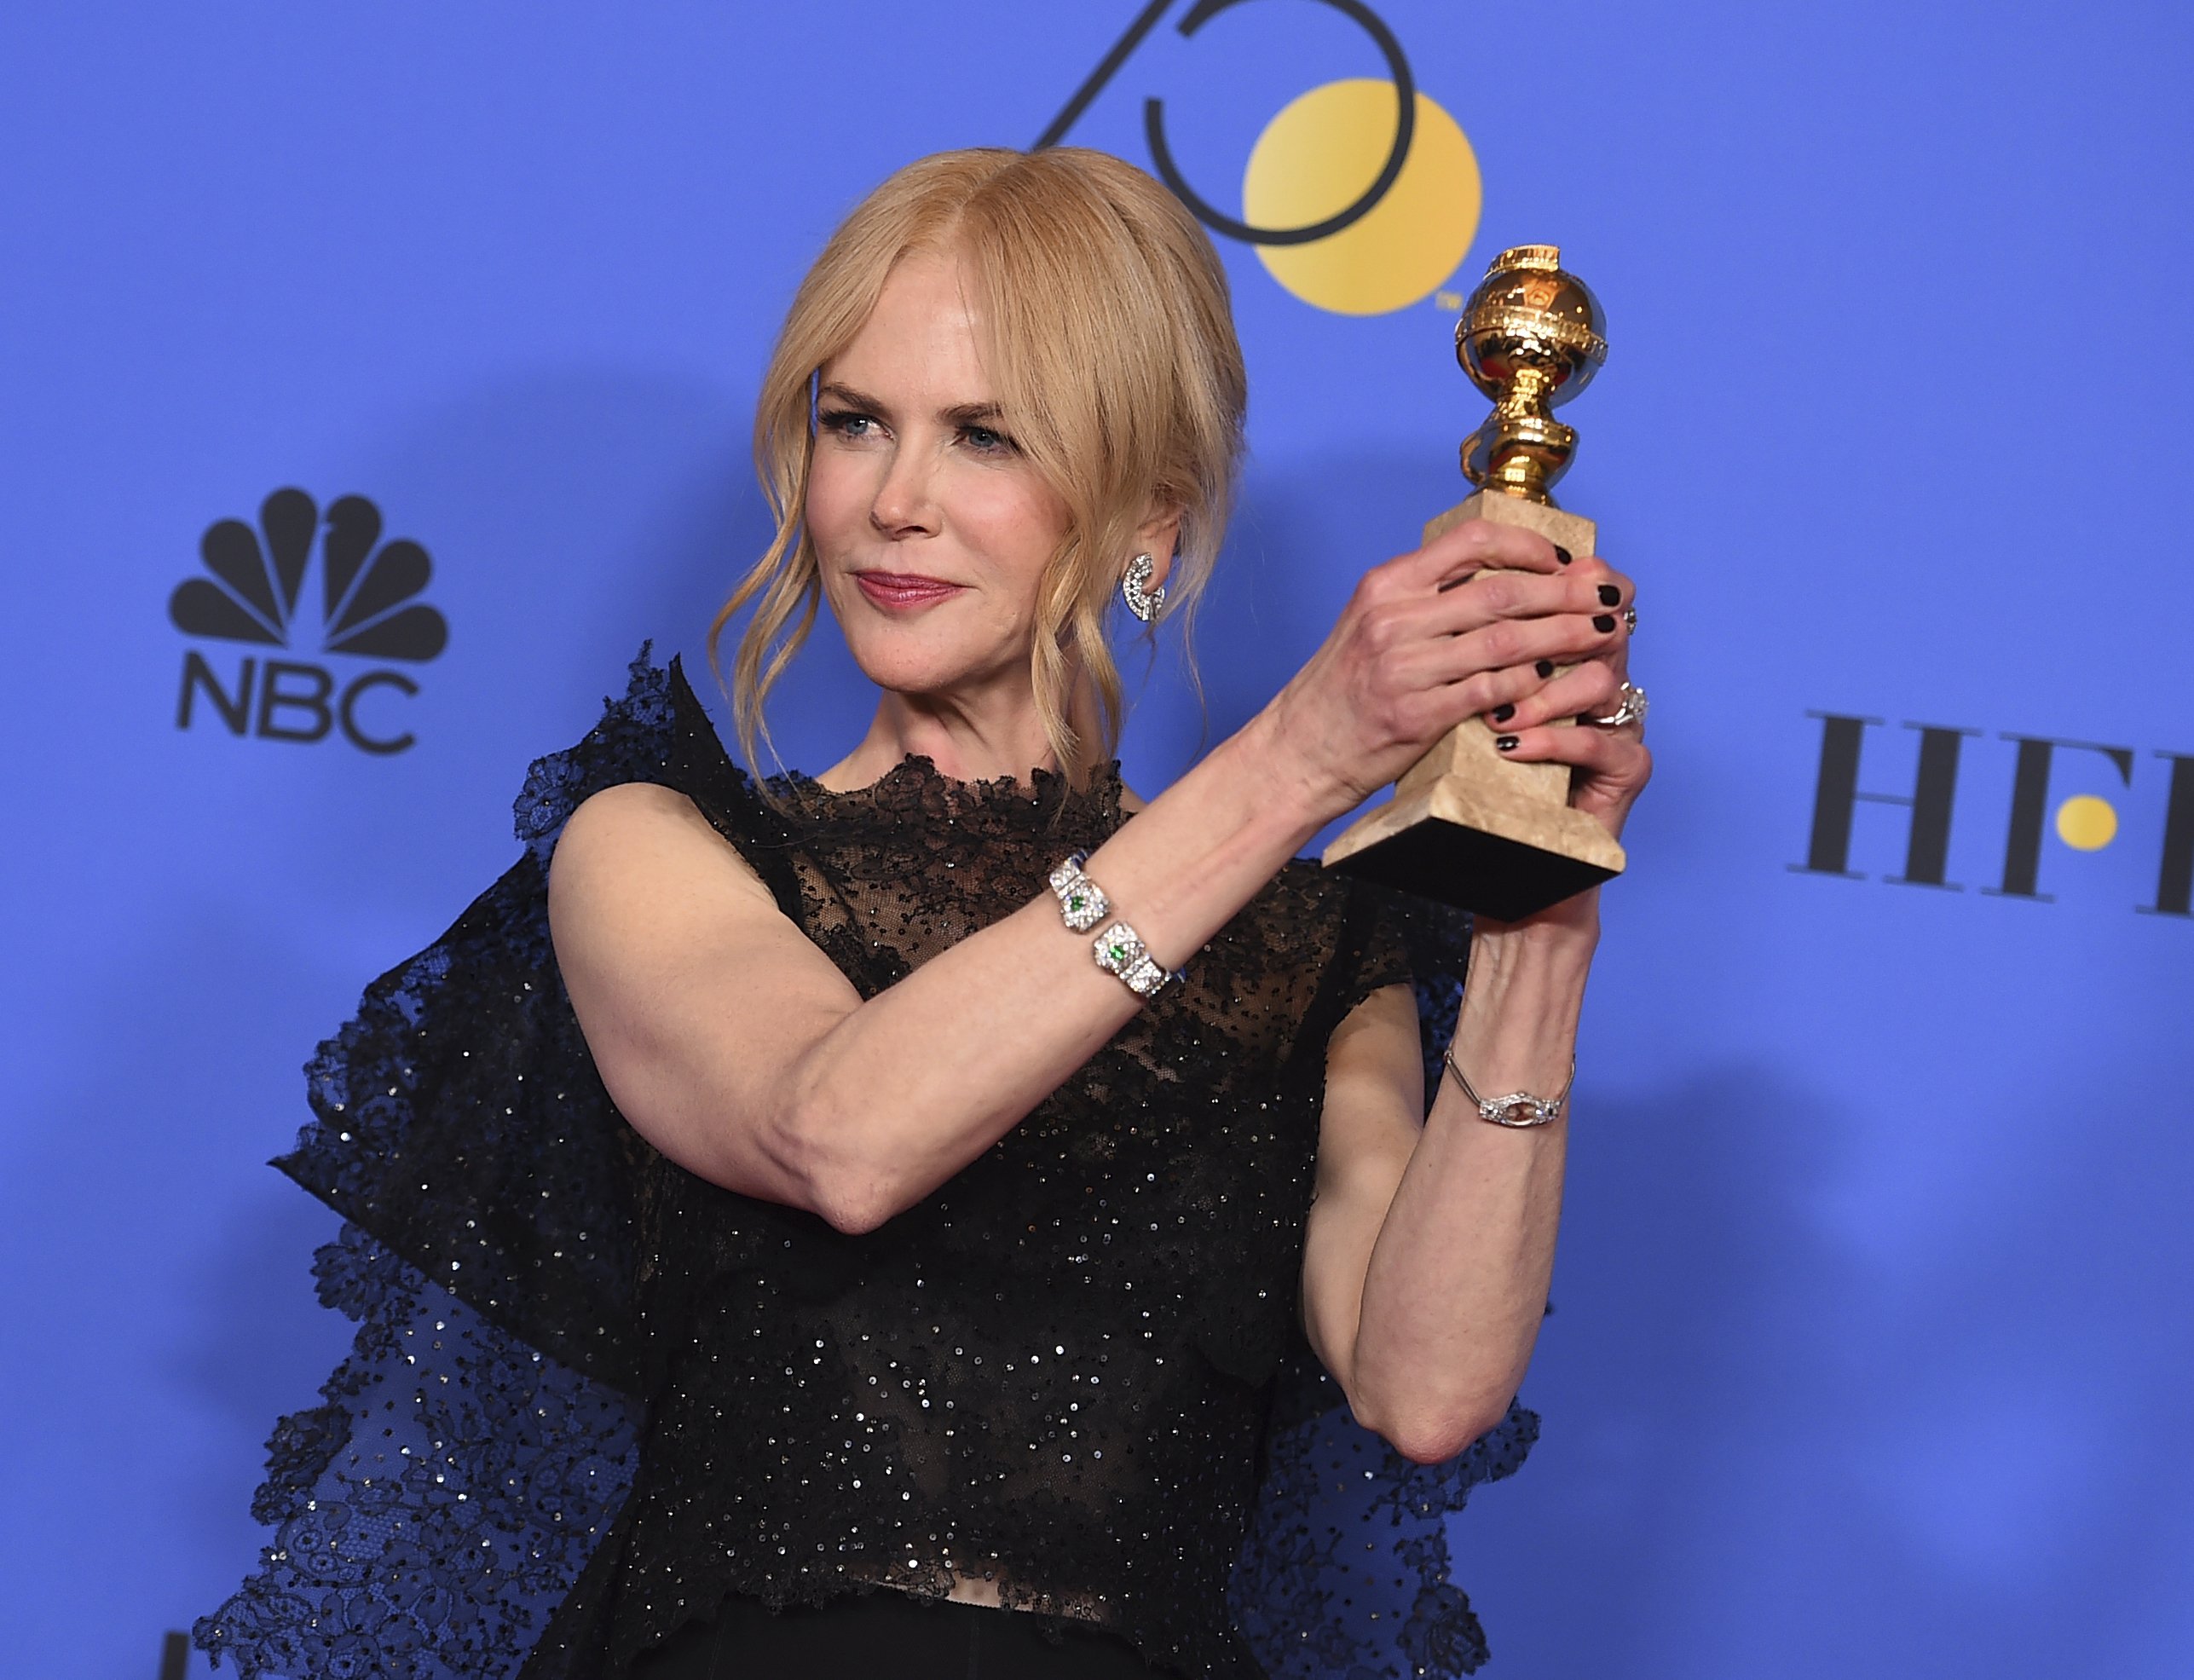 Nicole Kidman té un secret per semblar més jove que pots utilitzar tu